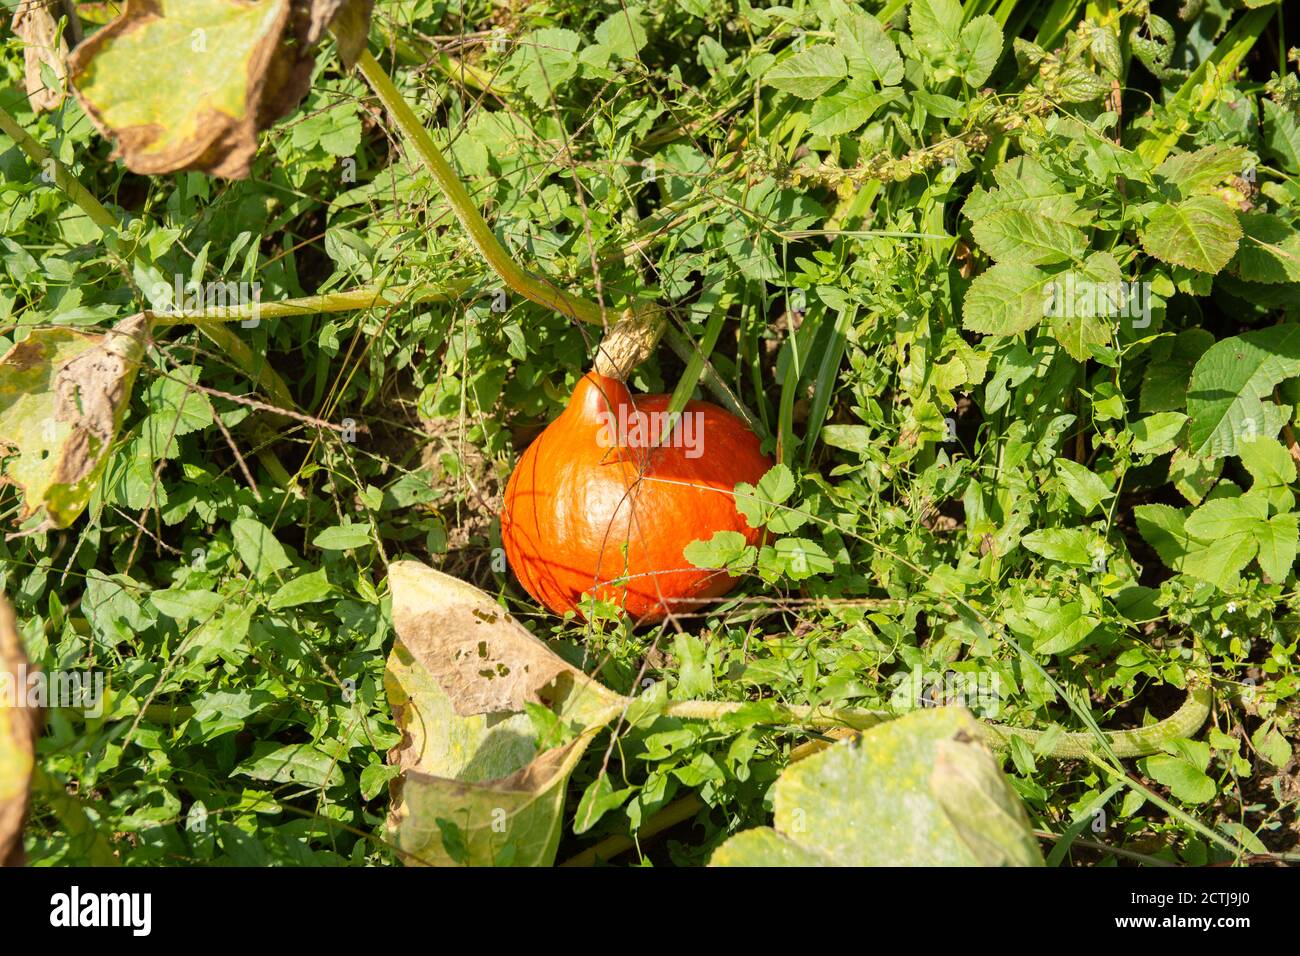 orangener / gelber Kürbis liegt im Gras Stock Photo